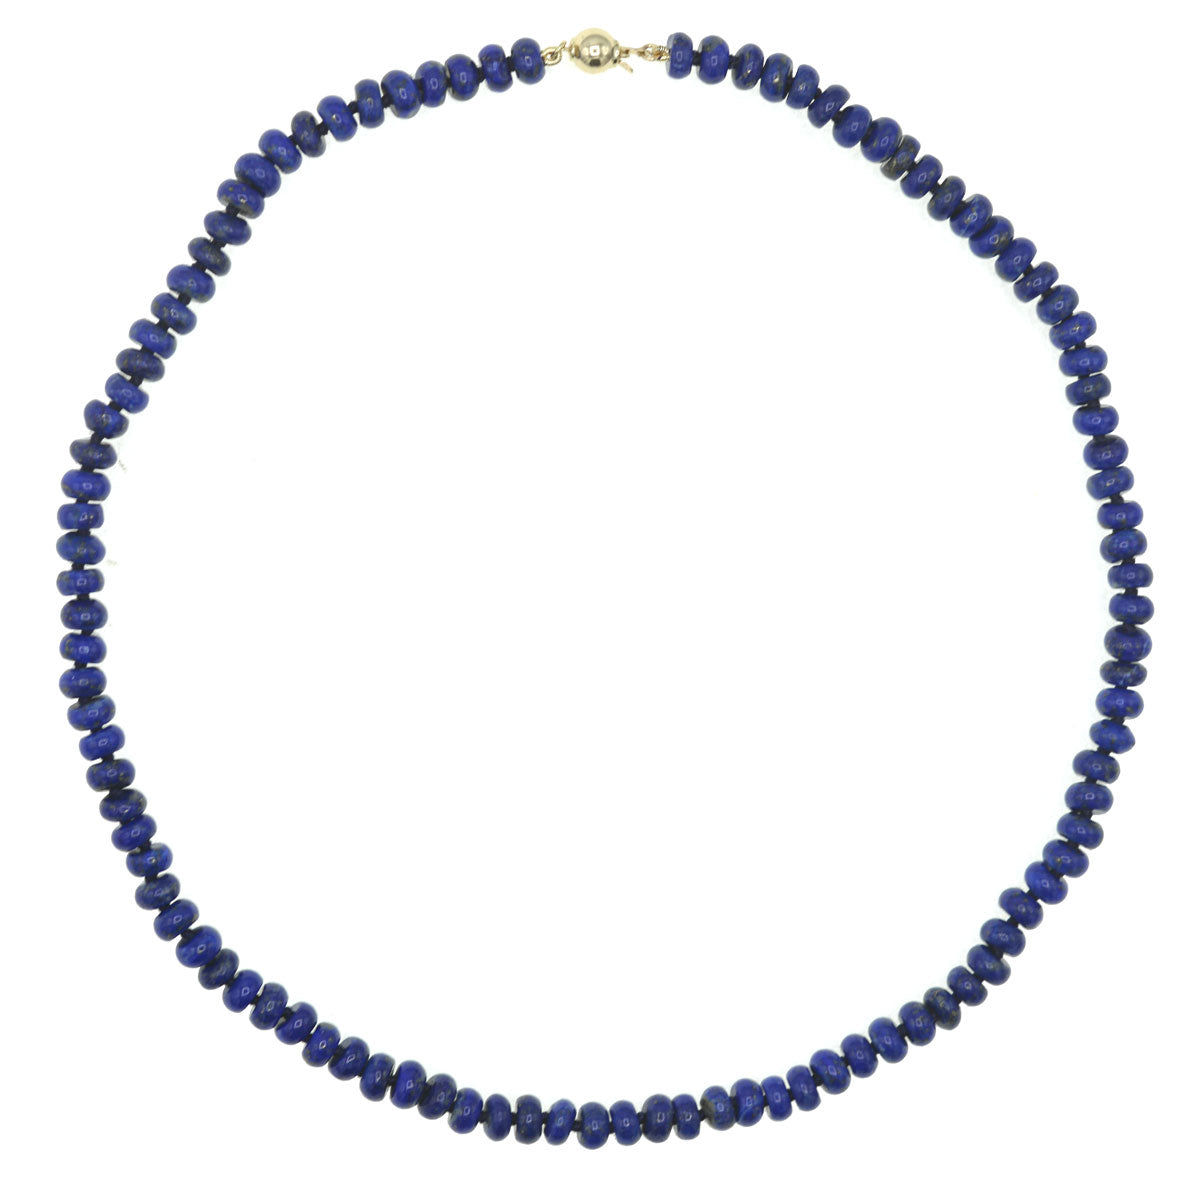 Vintage Lapis Lazuli bead necklace - IntoVintage.co.uk – Intovintage.co.uk